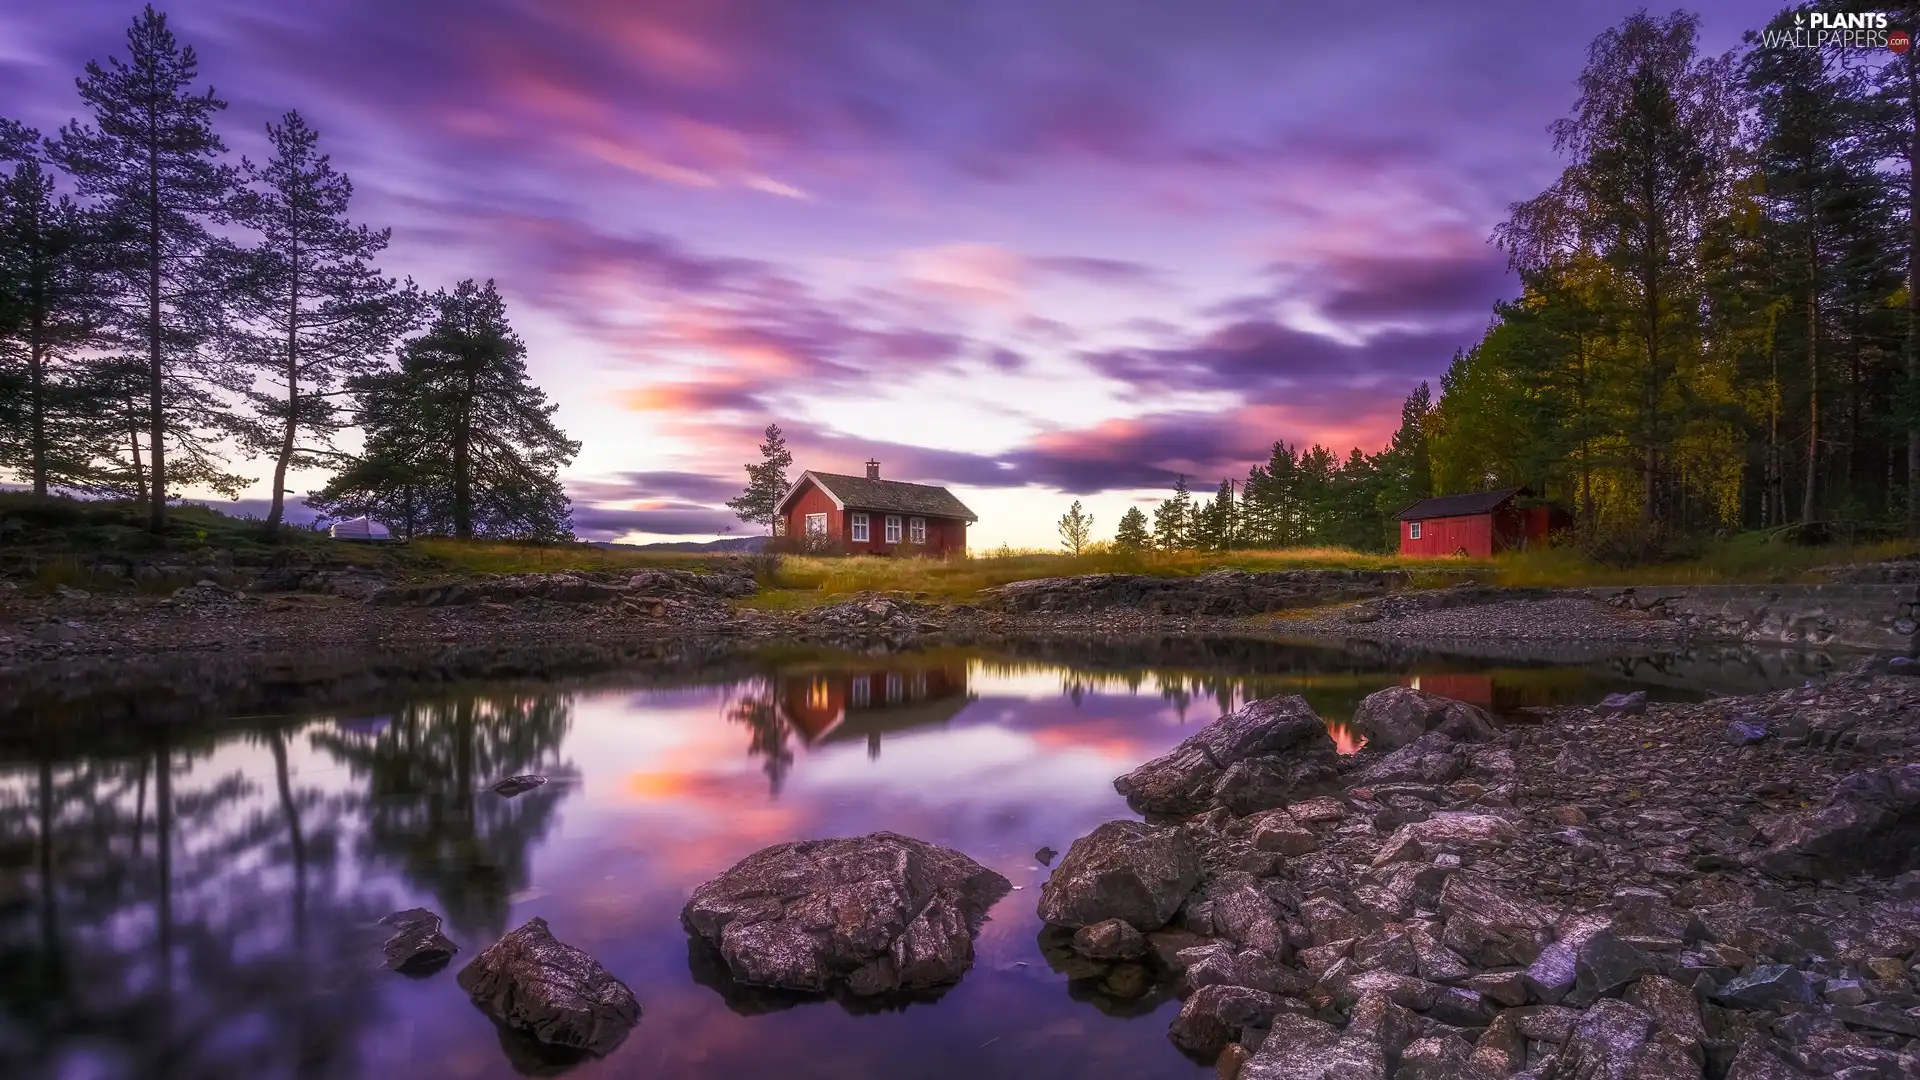 Vaeleren Lake, house, Boat, trees, clouds, Ringerike, Norway, viewes